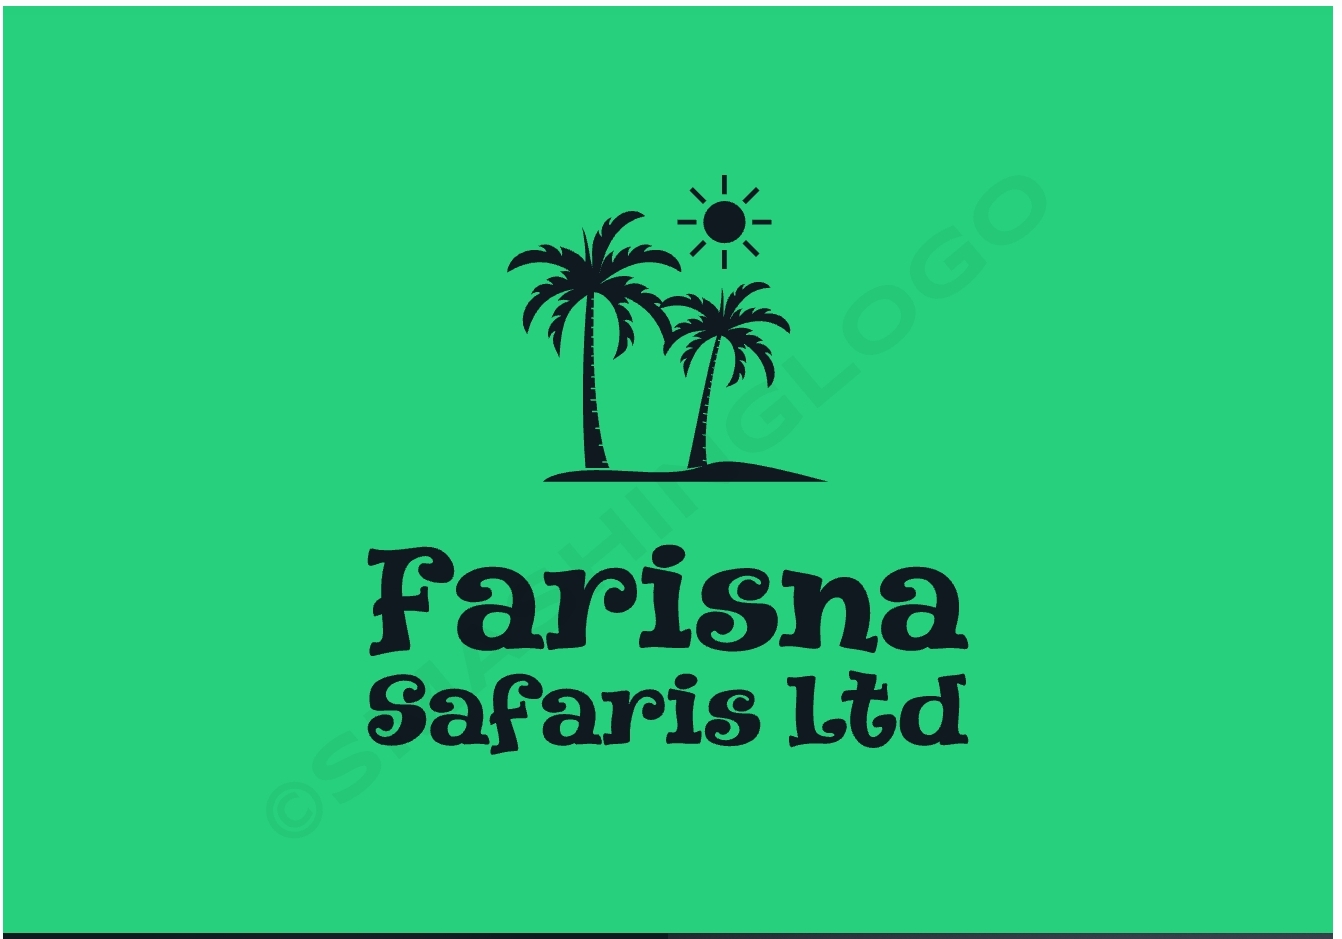 Farisna safaris Ltd